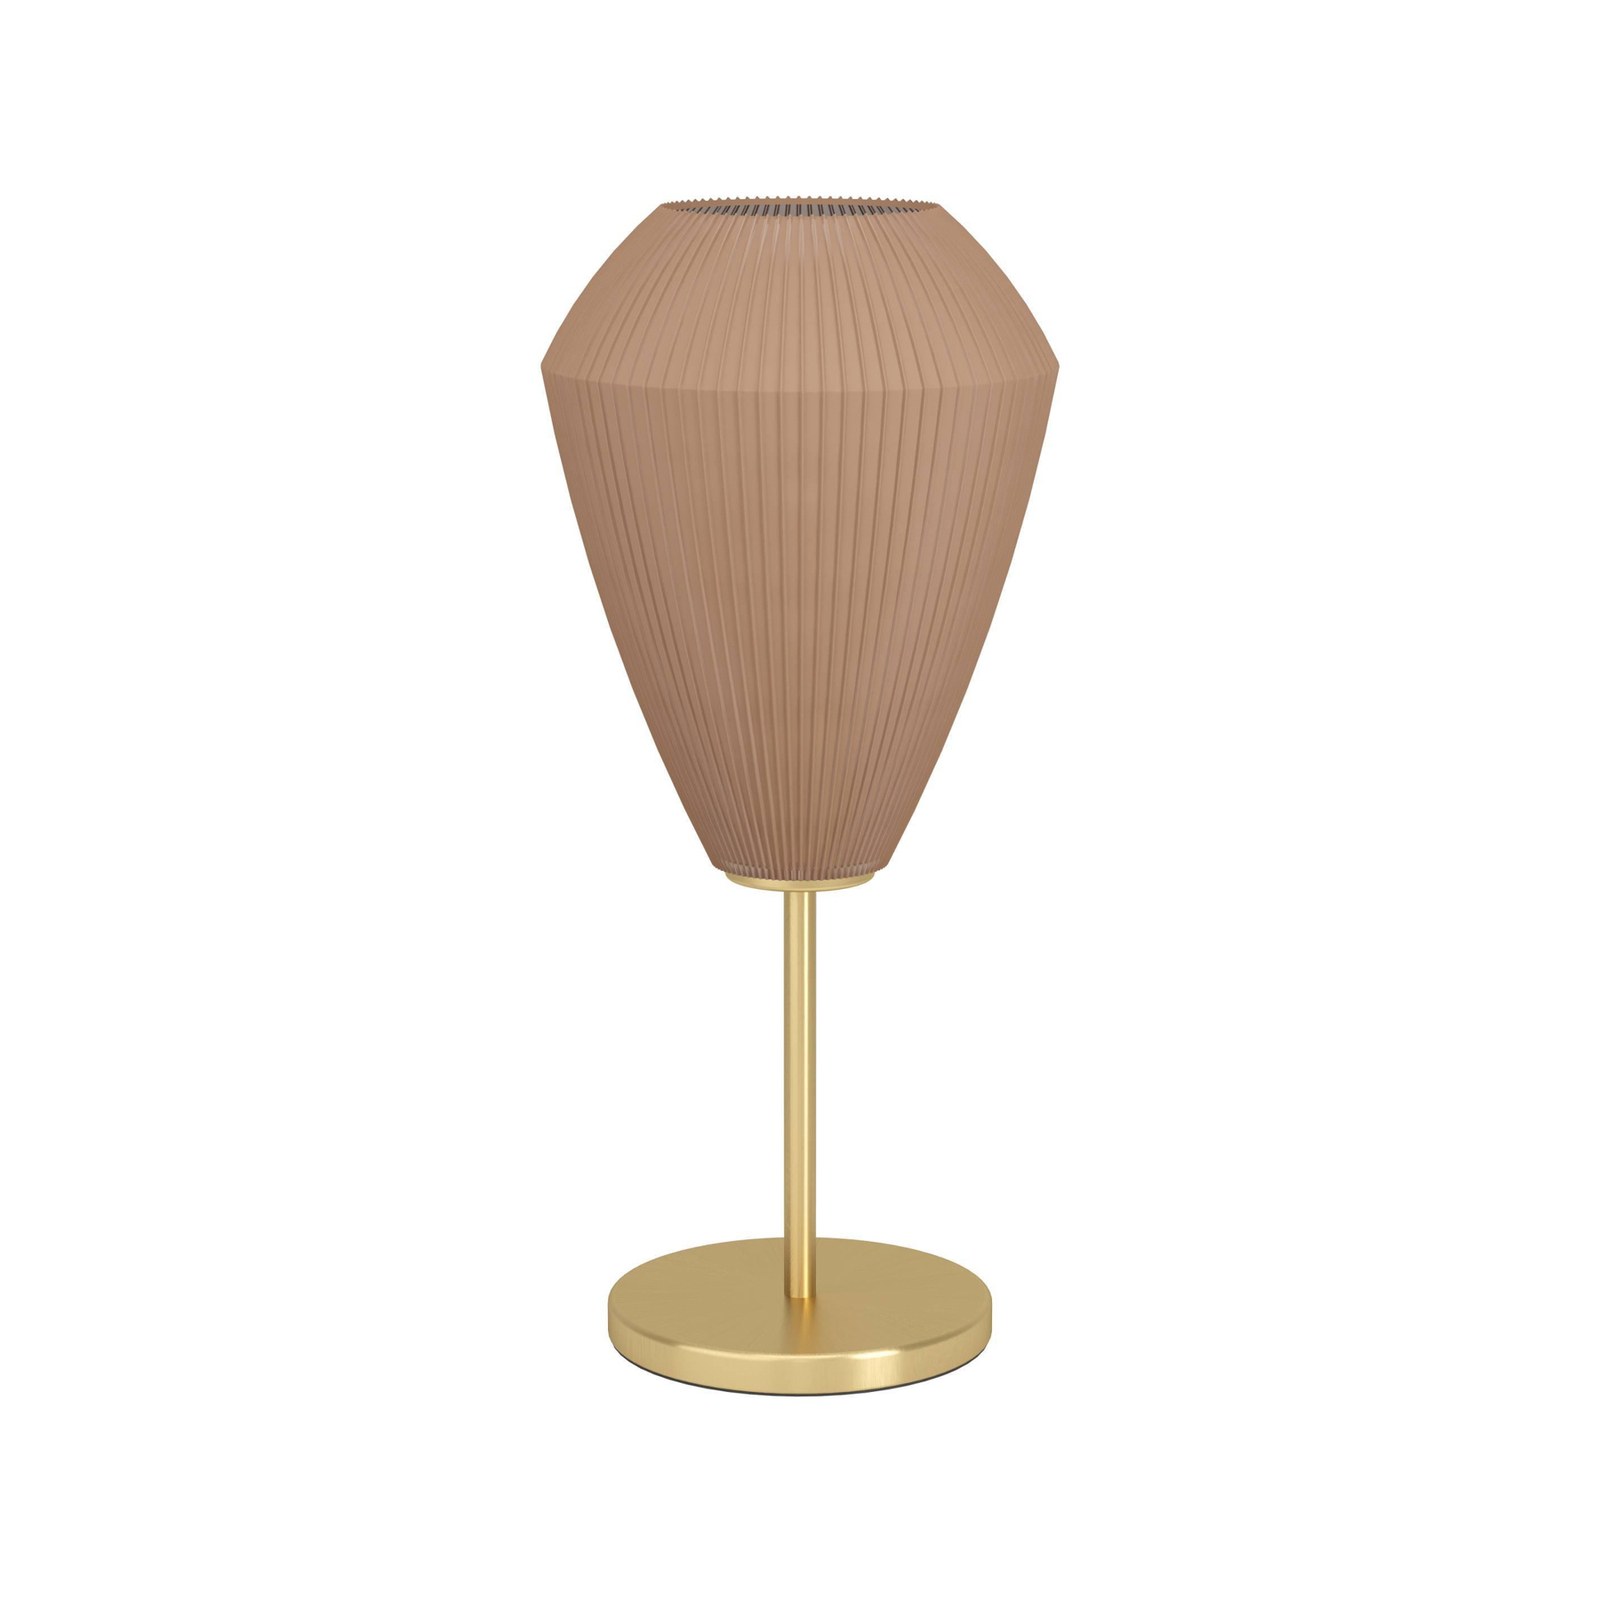 Настолна лампа Caprarola, височина 46 cm, пясъчен цвят/месинг, стъкло